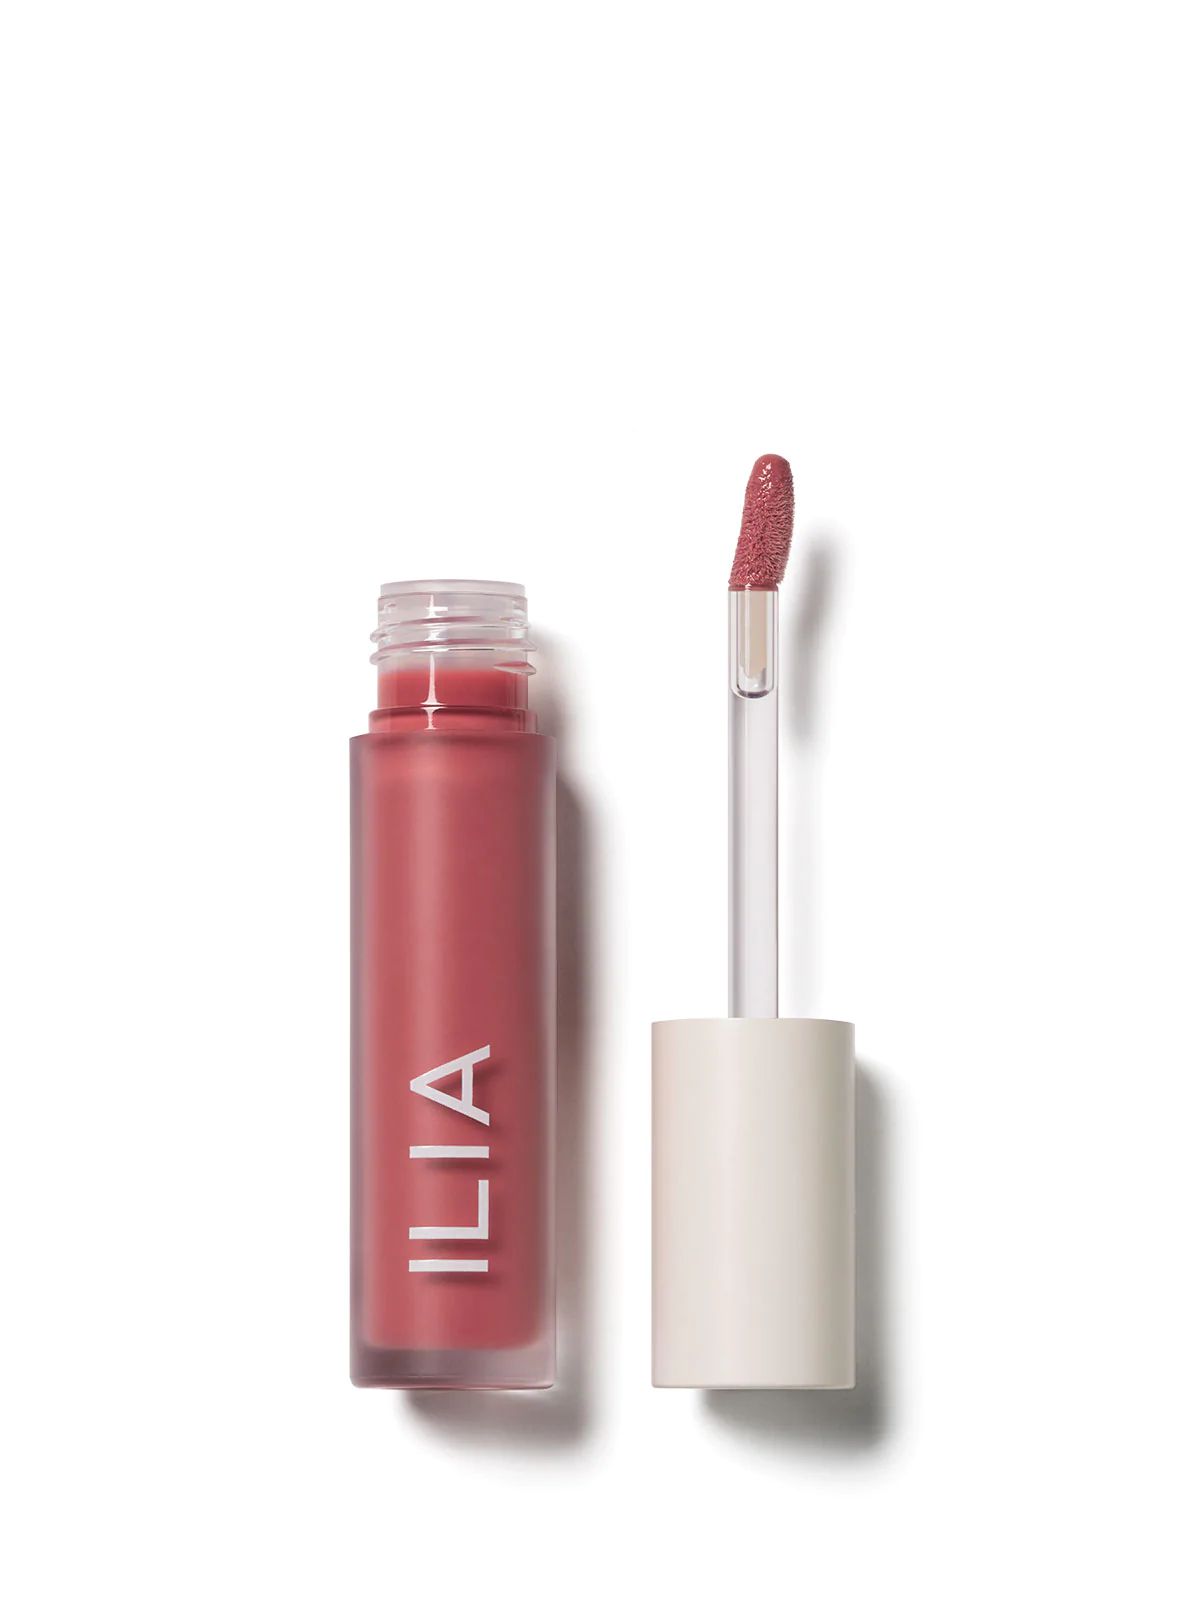 ILIA Balmy Gloss: Burnt Coral - Tinted Lip Oil | ILIA Beauty | ILIA Beauty